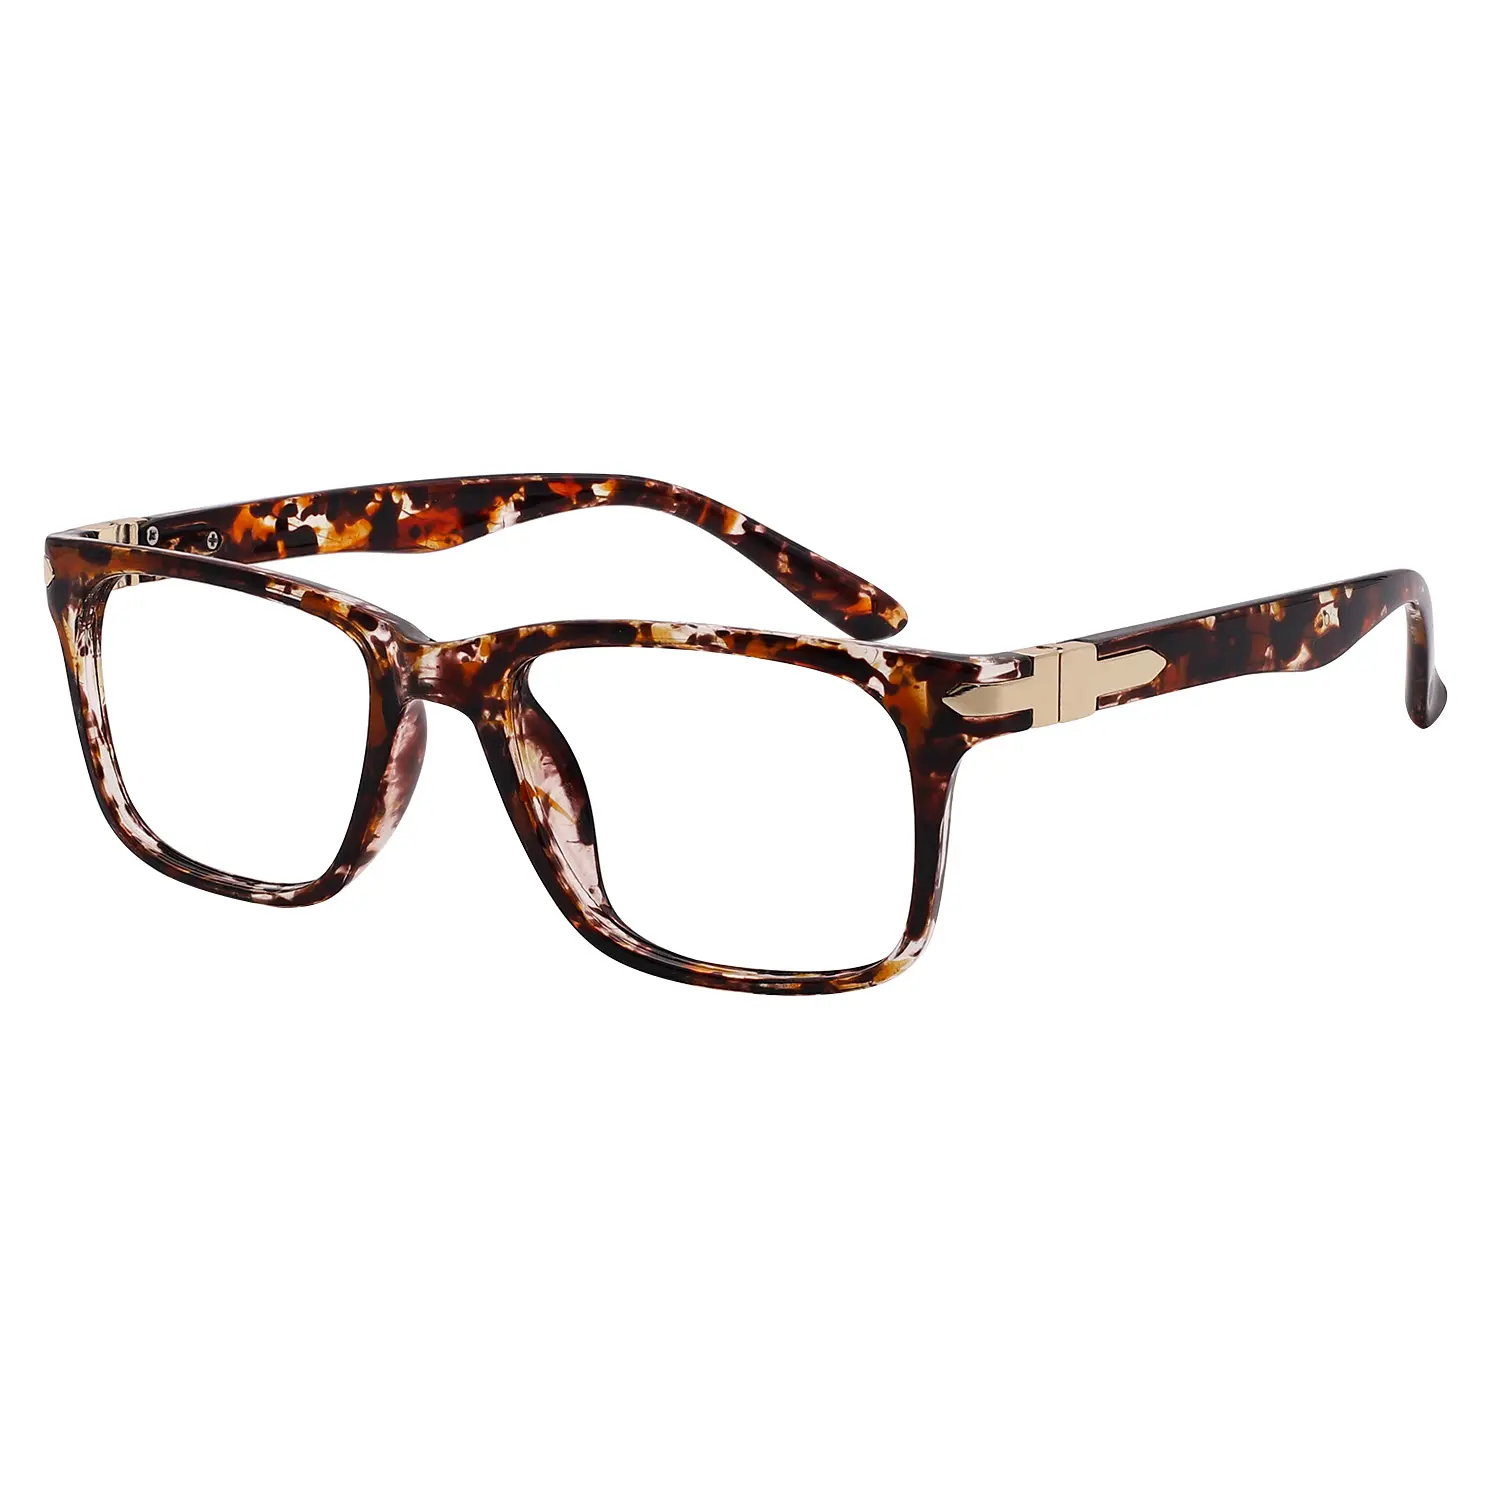 نظارات عالية الجودة عتيقة سميكة مربعة الشكل للقراءة نظارات للعين نظارات بصرية نقية إطارات النظارات للنساء